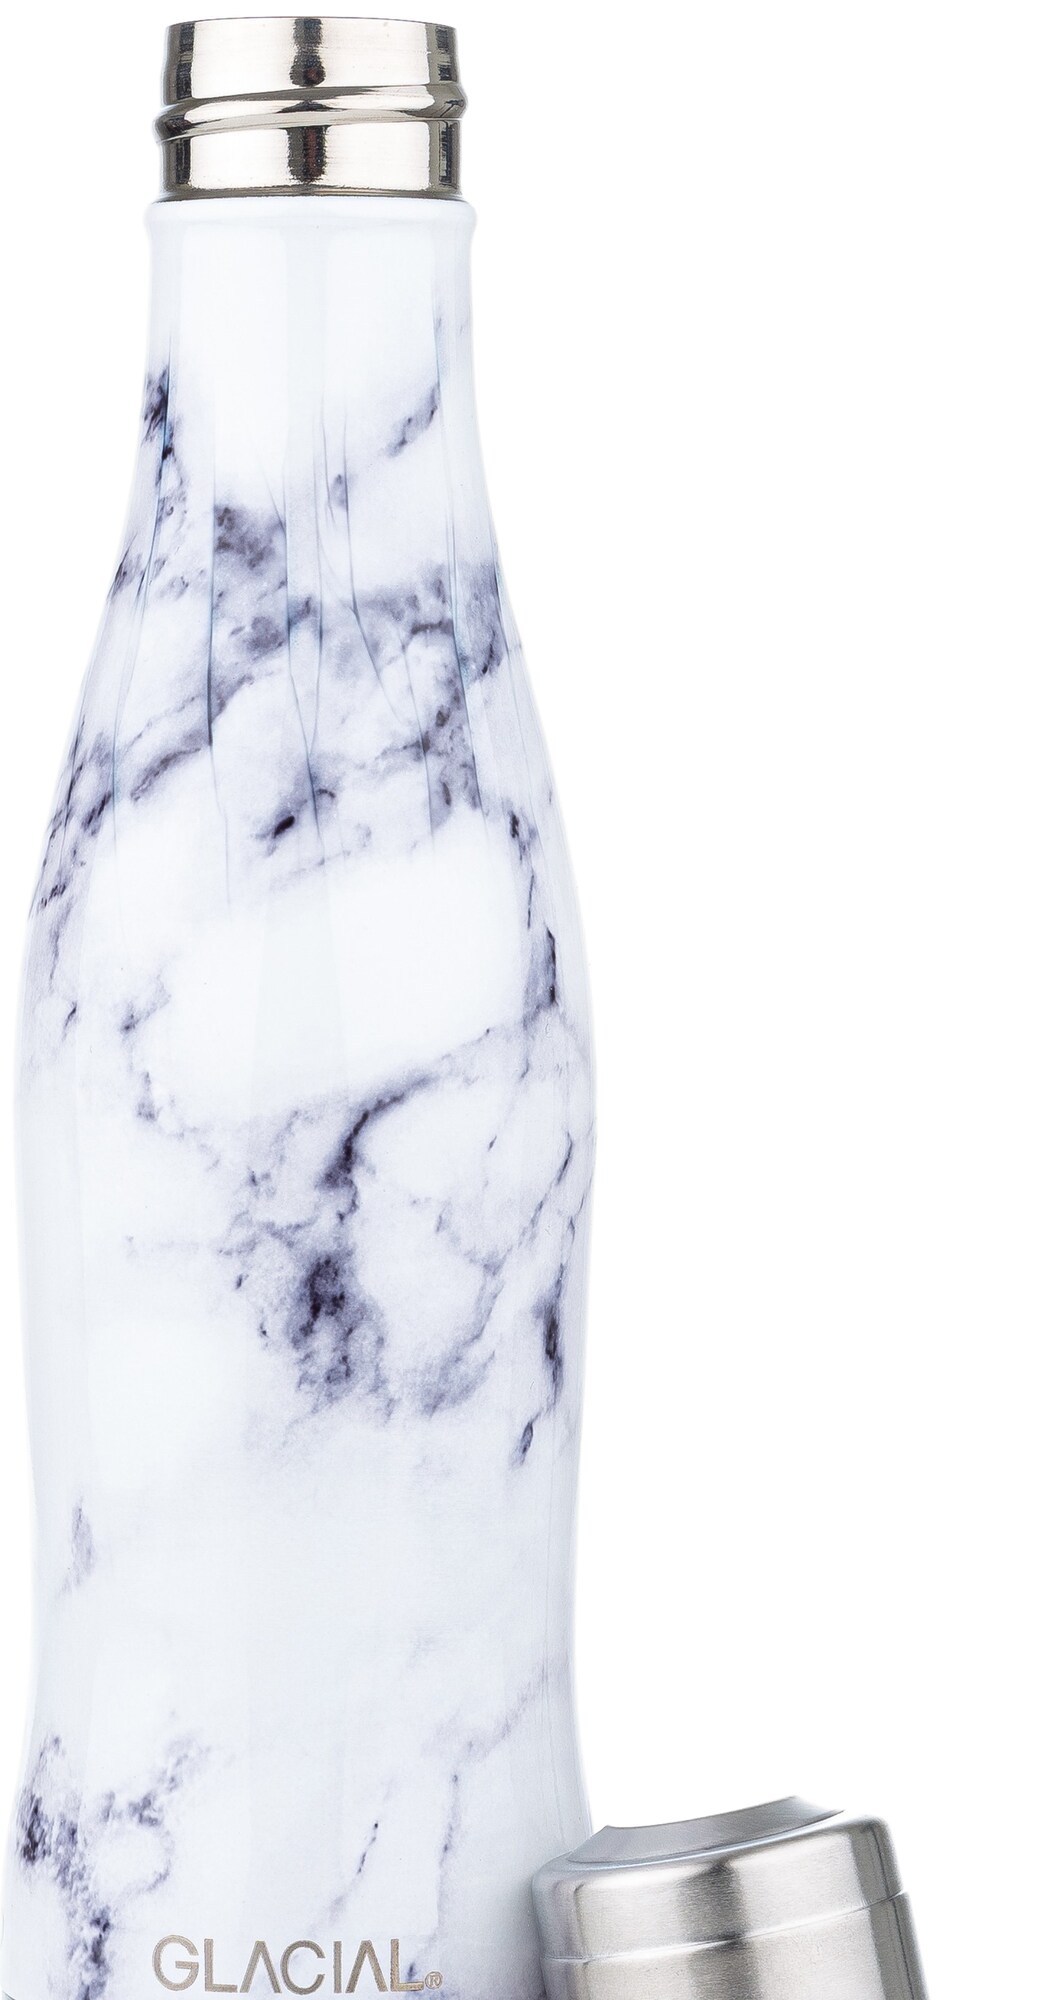 Glacial vannflaske GL2128500211 (hvit marmor) - Elkjøp